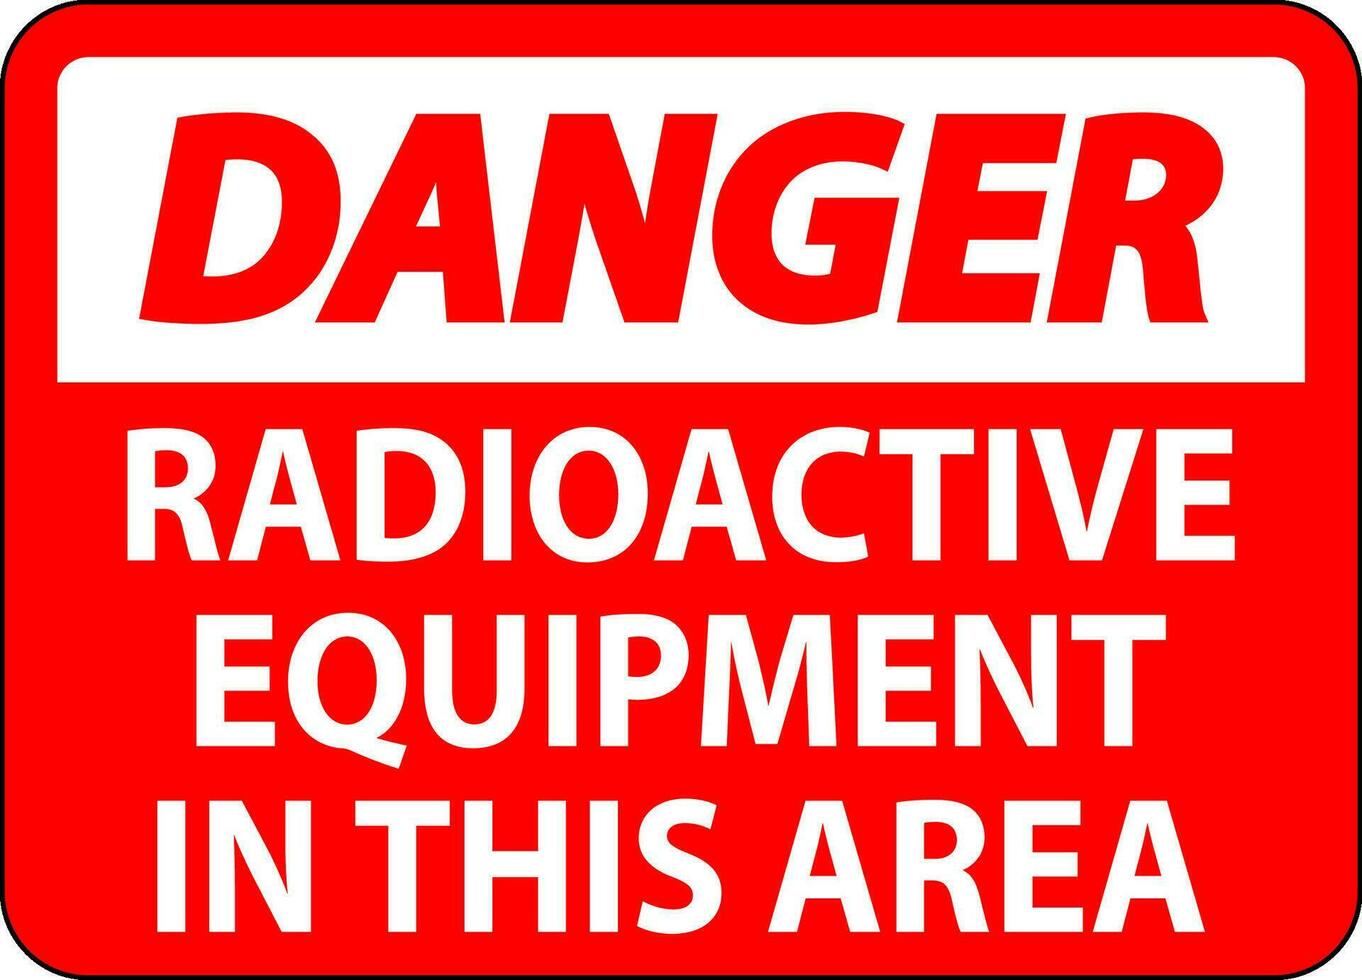 fara tecken varning radioaktiv Utrustning i detta område vektor